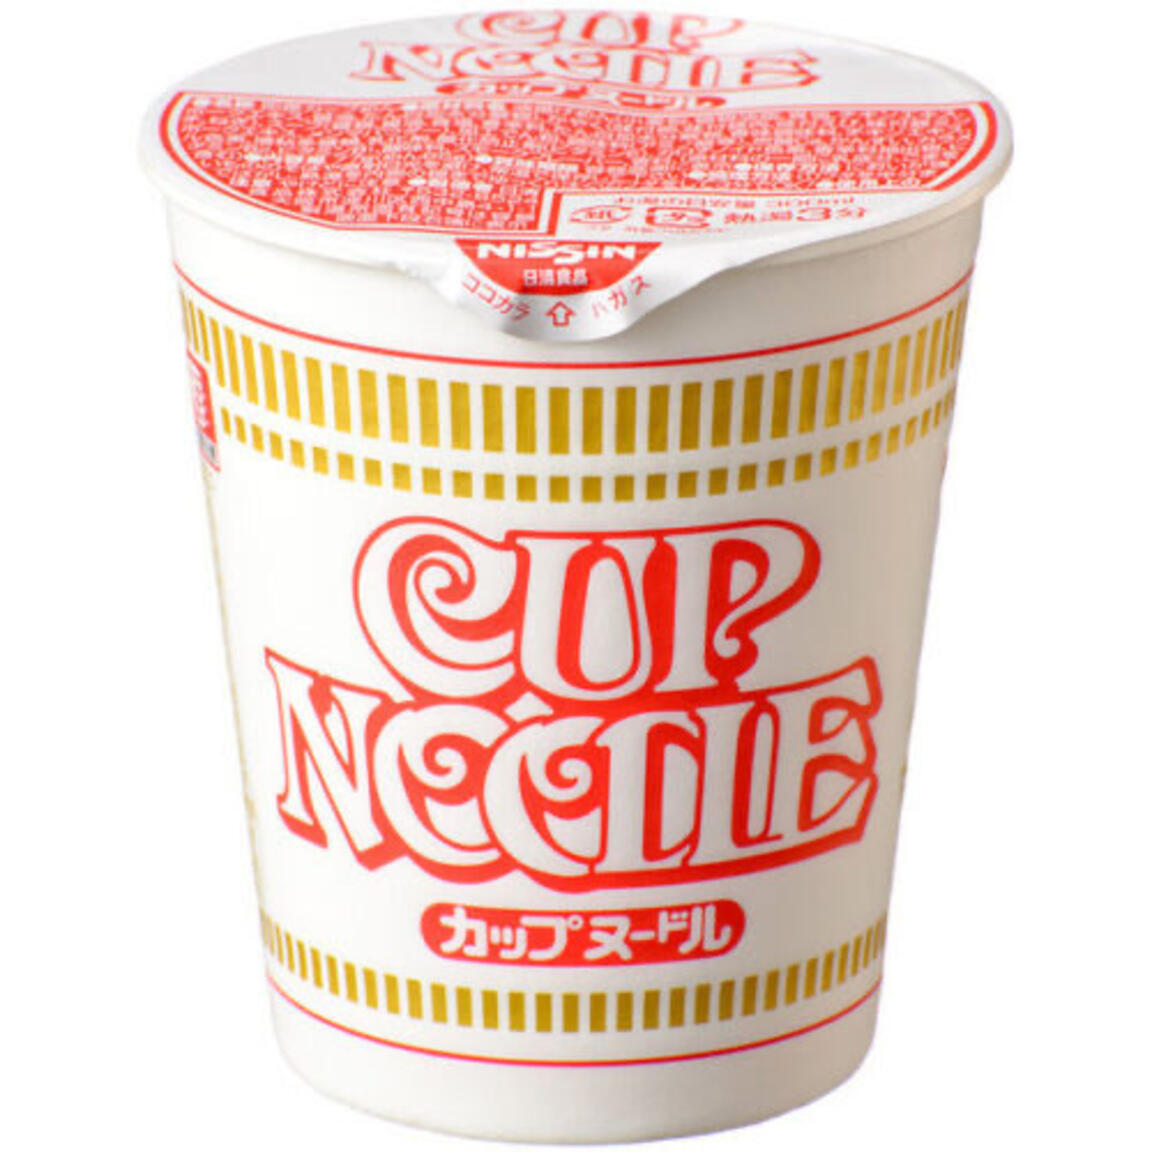 Сублимированная лапша. Nissin Cup Noodles. Лапша Cup Ramen. Лапша Nissin Cup. Японская лапша быстрого приготовления кап нудл.